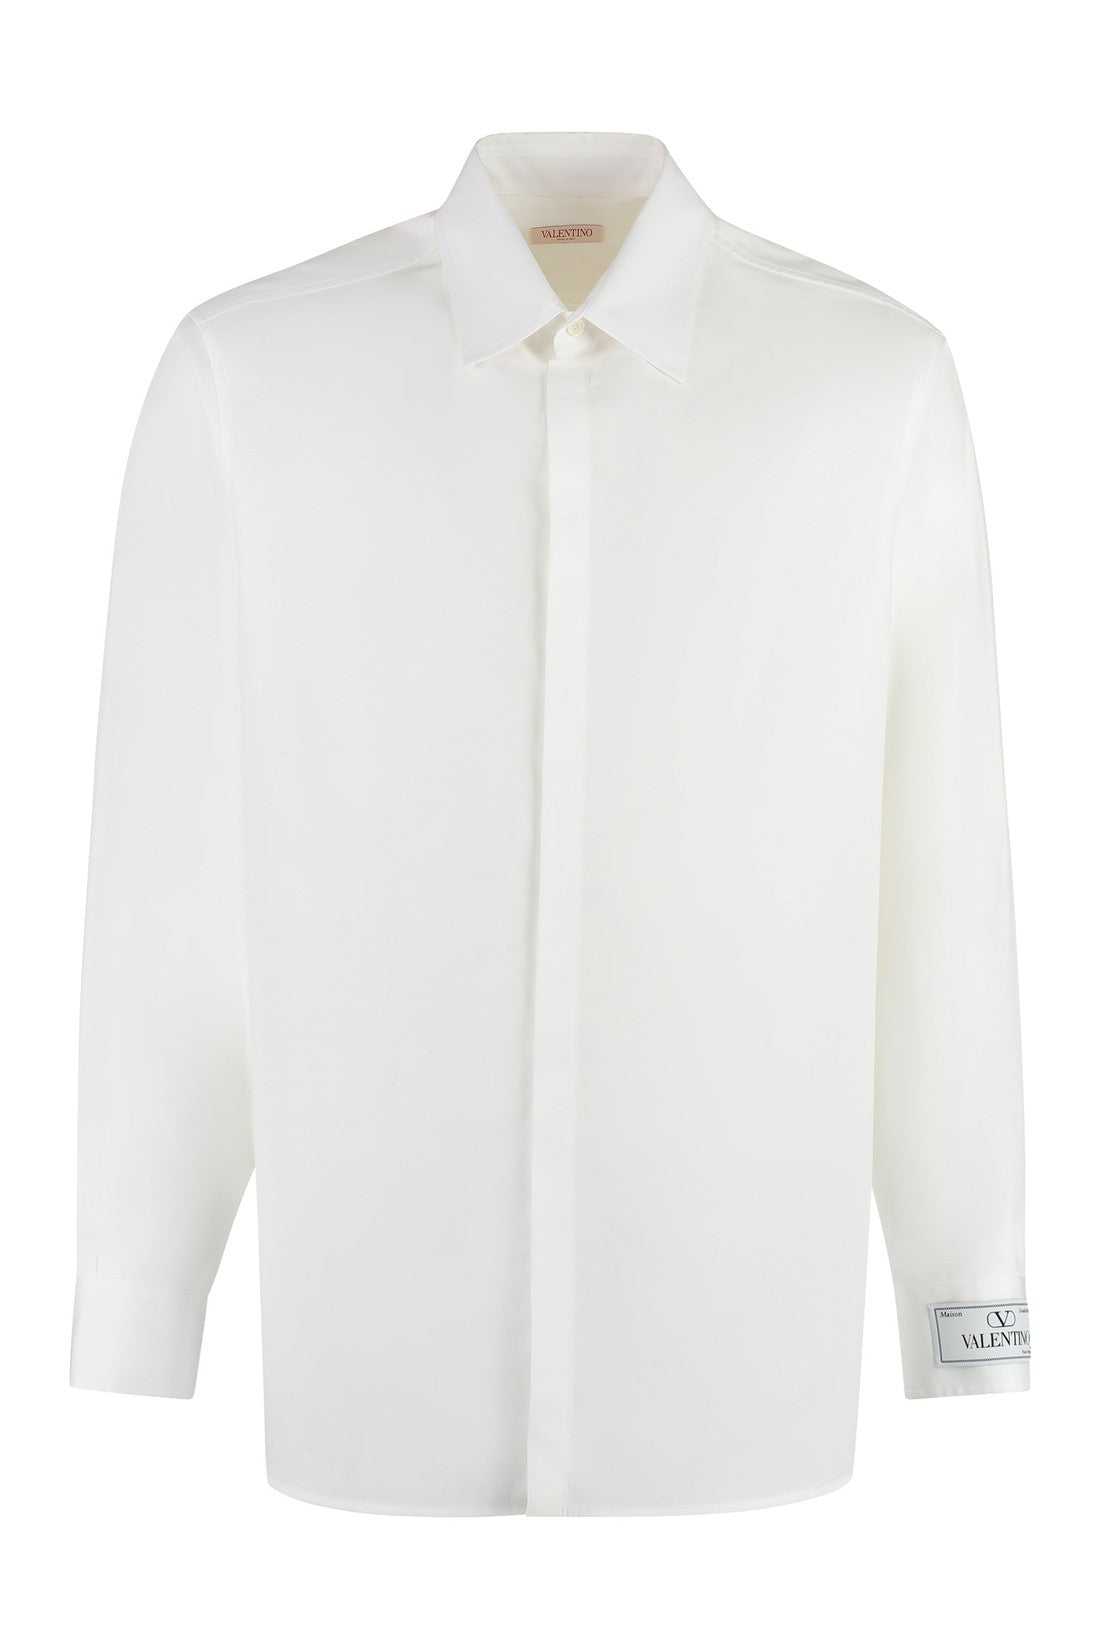 Valentino-OUTLET-SALE-Cotton shirt-ARCHIVIST